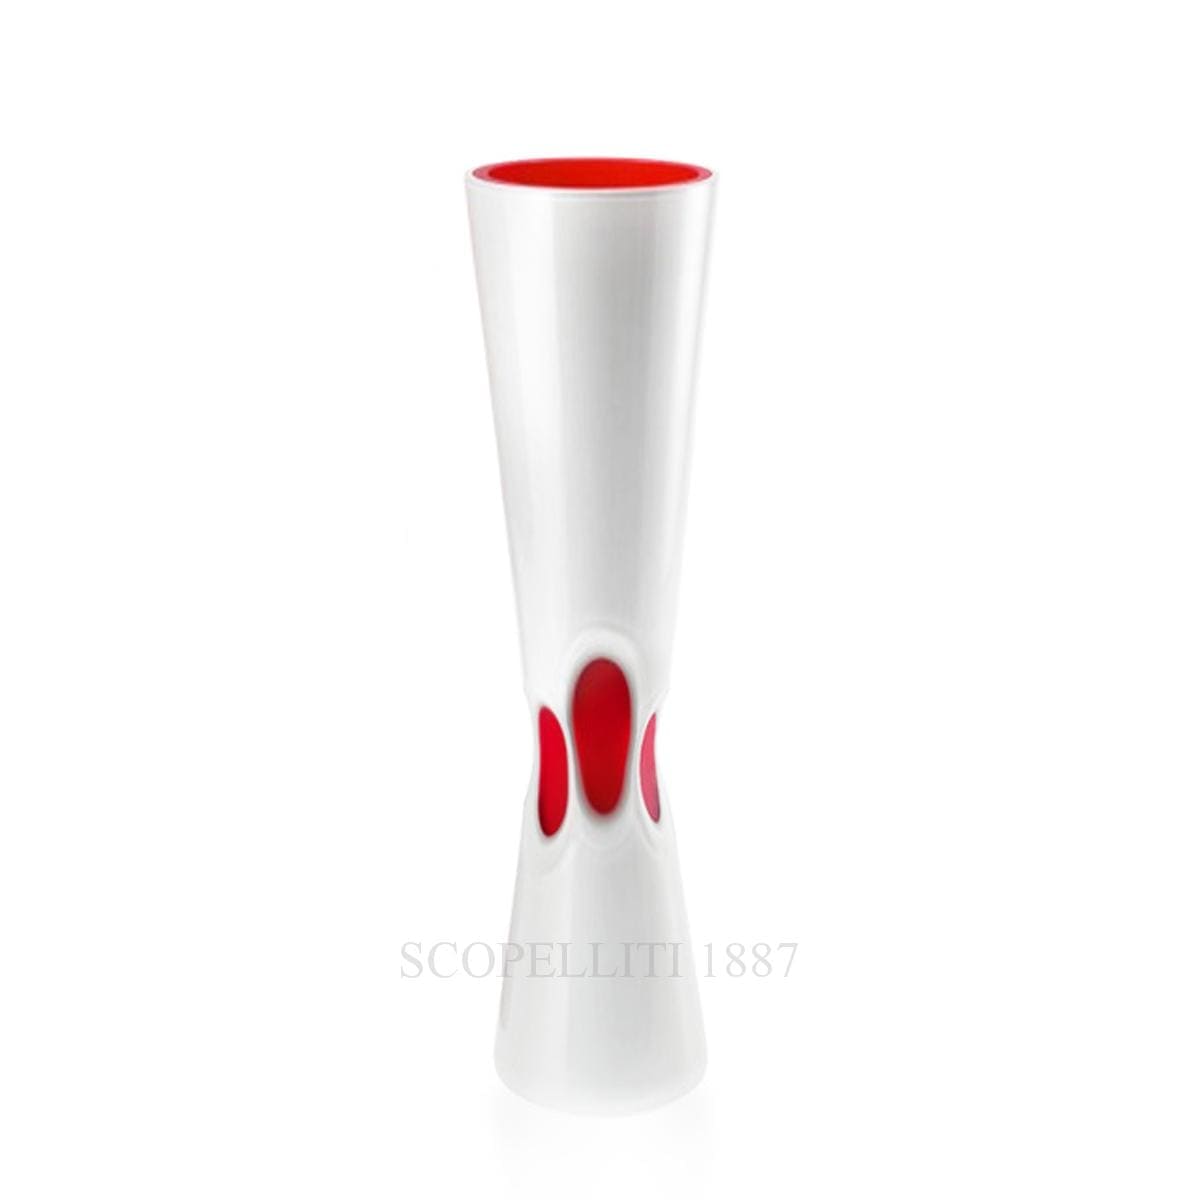 venini italian designer accenti white vase murano glass